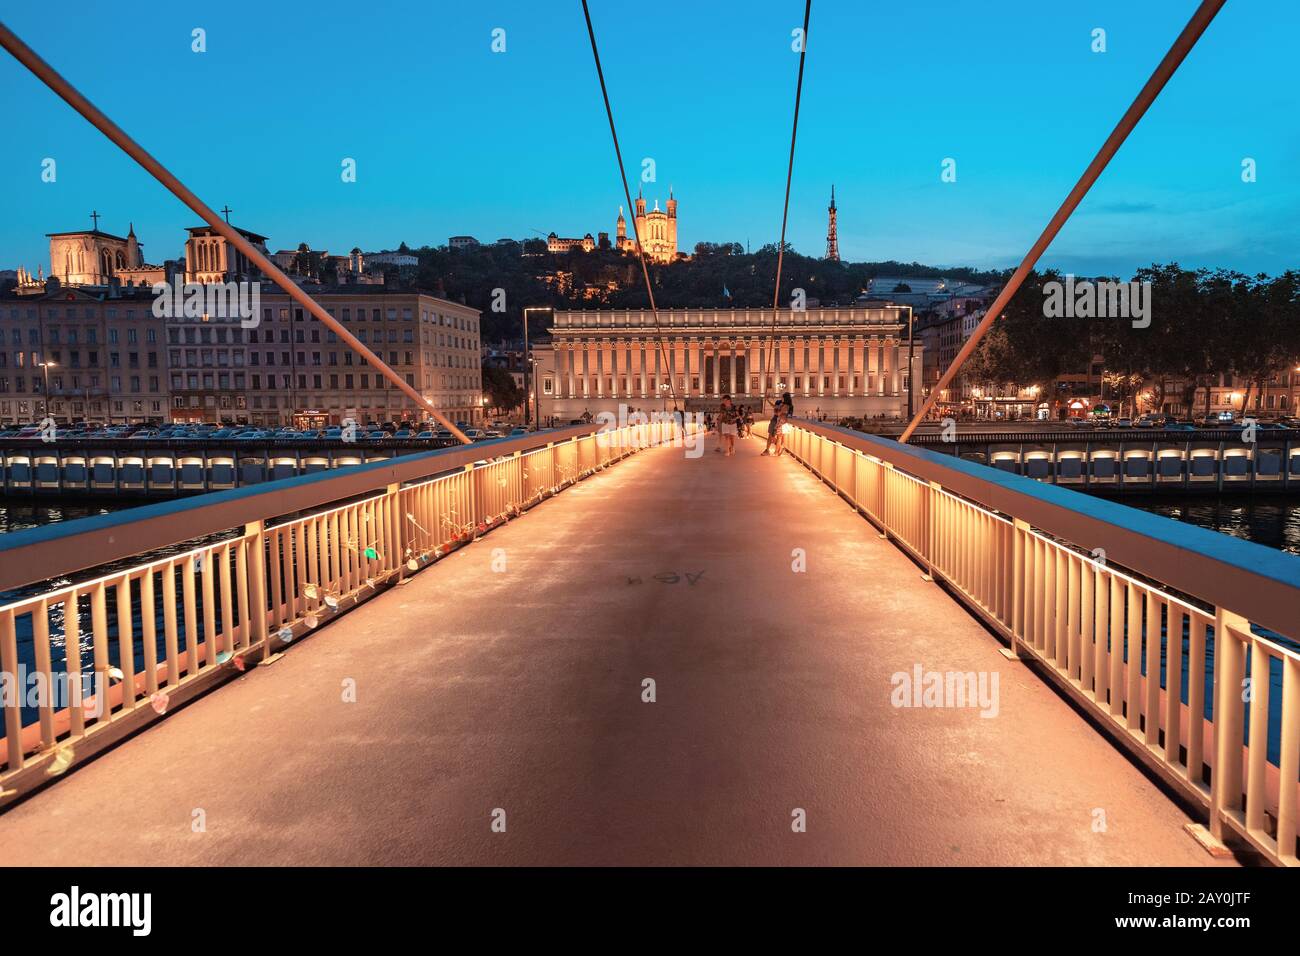 23. Juli 2019, Lyon, Frankreich: Stadtbild der Nacht von Lyon mit beleuchtetem Courthouse und roter Fußgängerbrücke über den Fluss Saone. Panorama-Blau-Stundenlandschaft Stockfoto